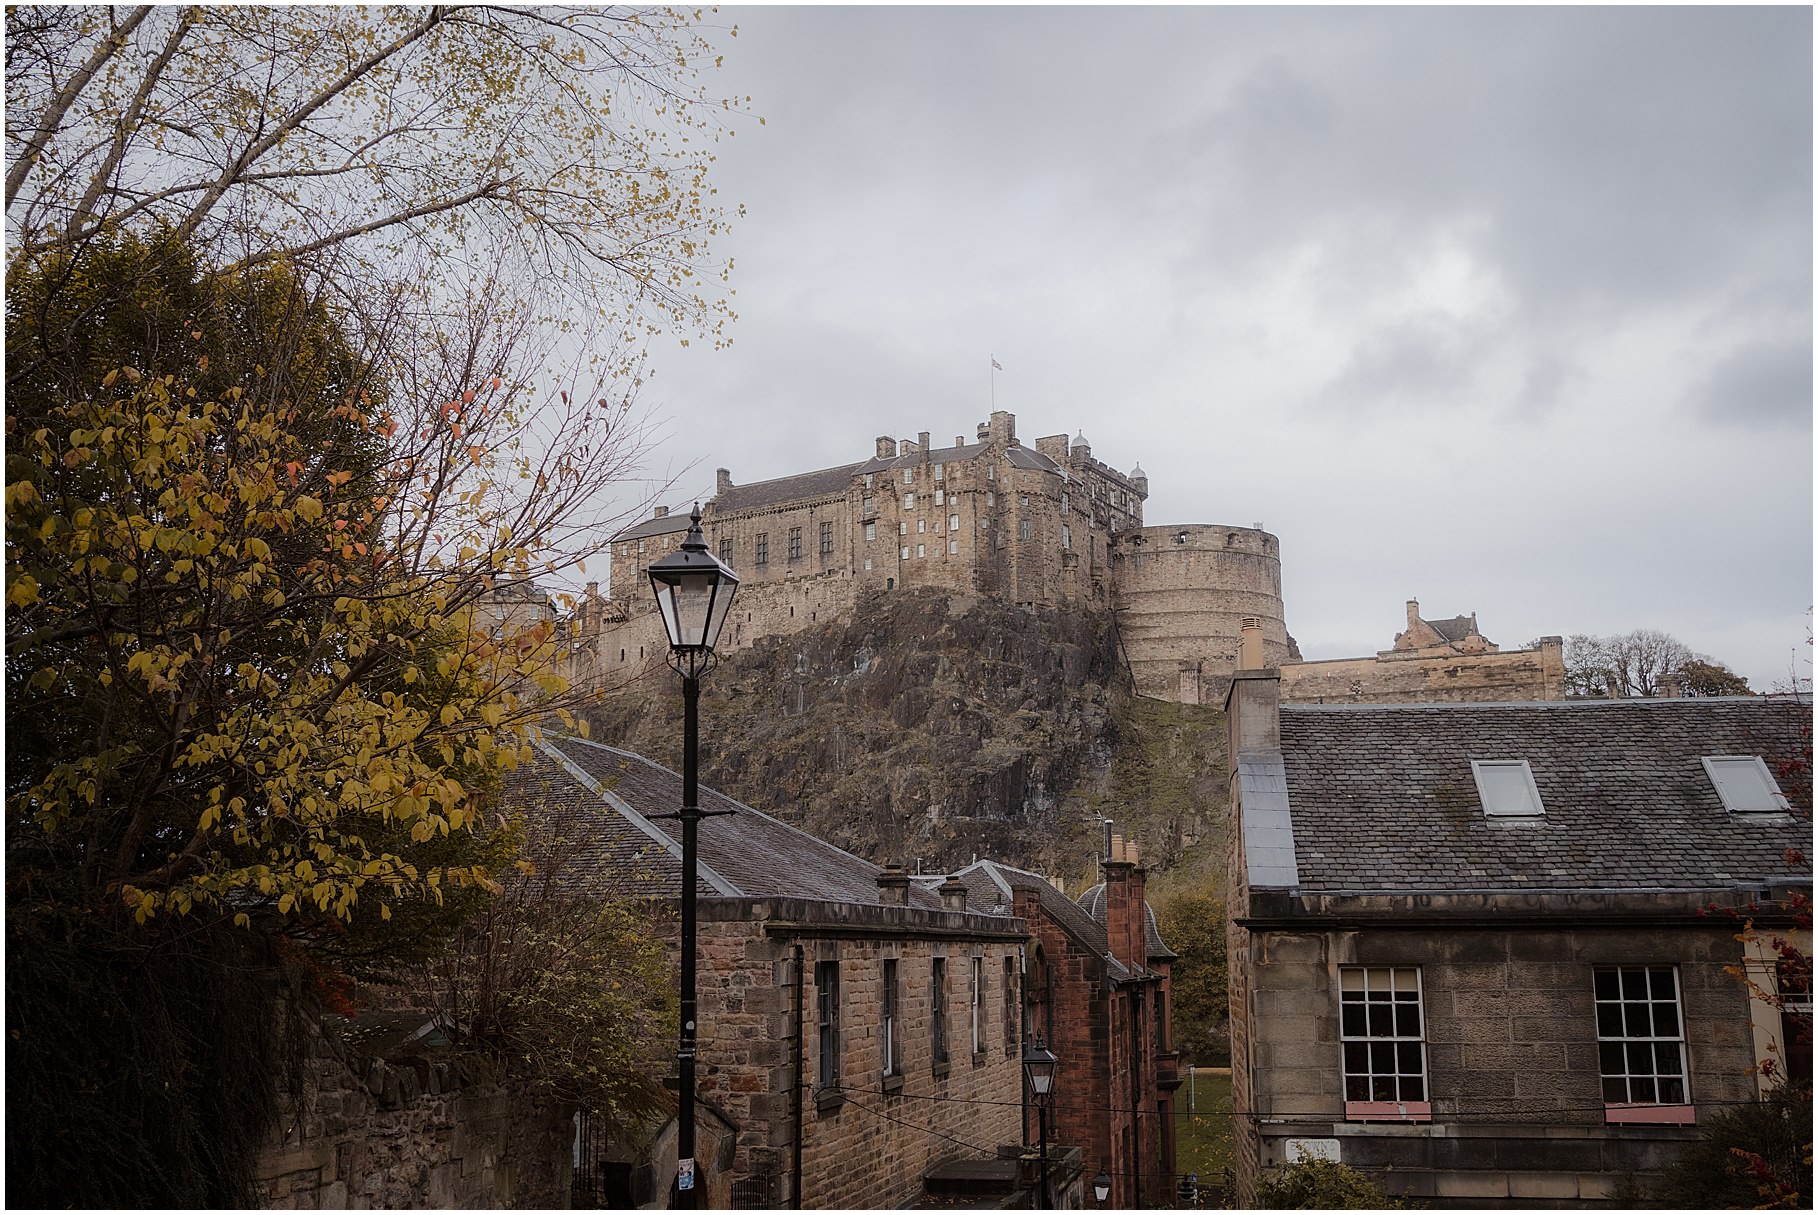 The Vennel Steps - Edinburgh Castle elopement photos